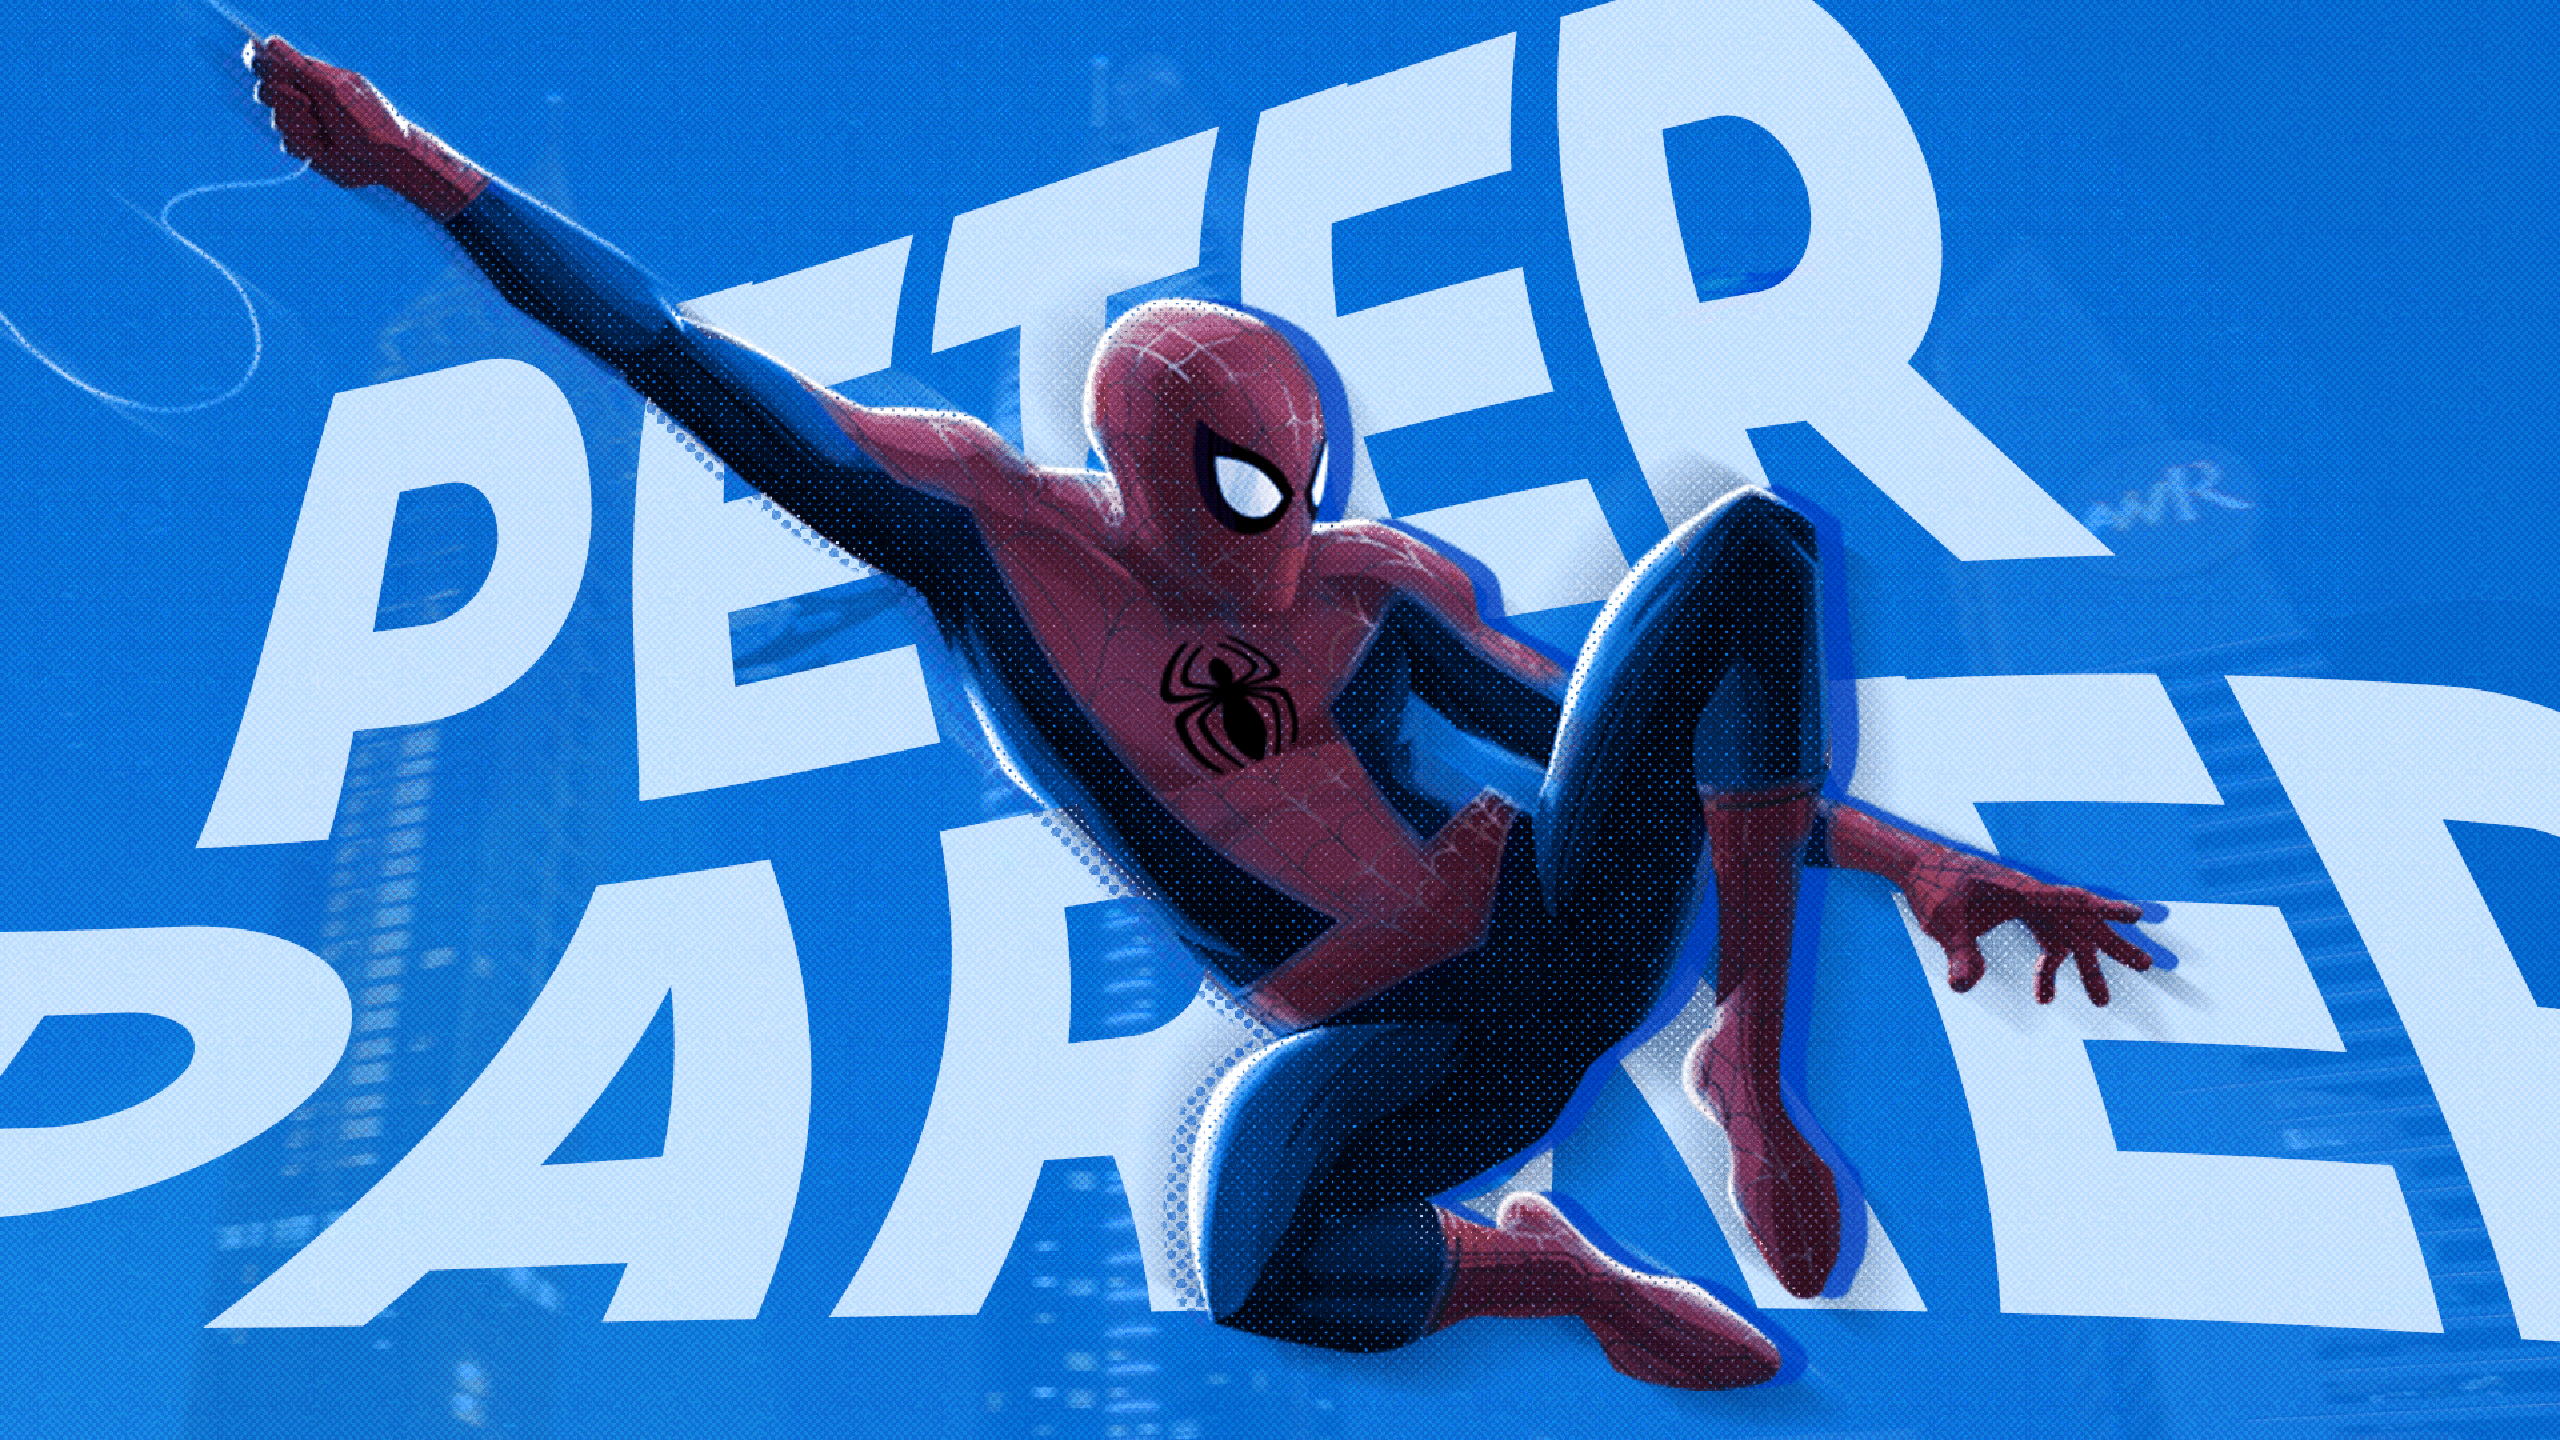 2560x1440 Cartoon Peter Parker Wallpapers